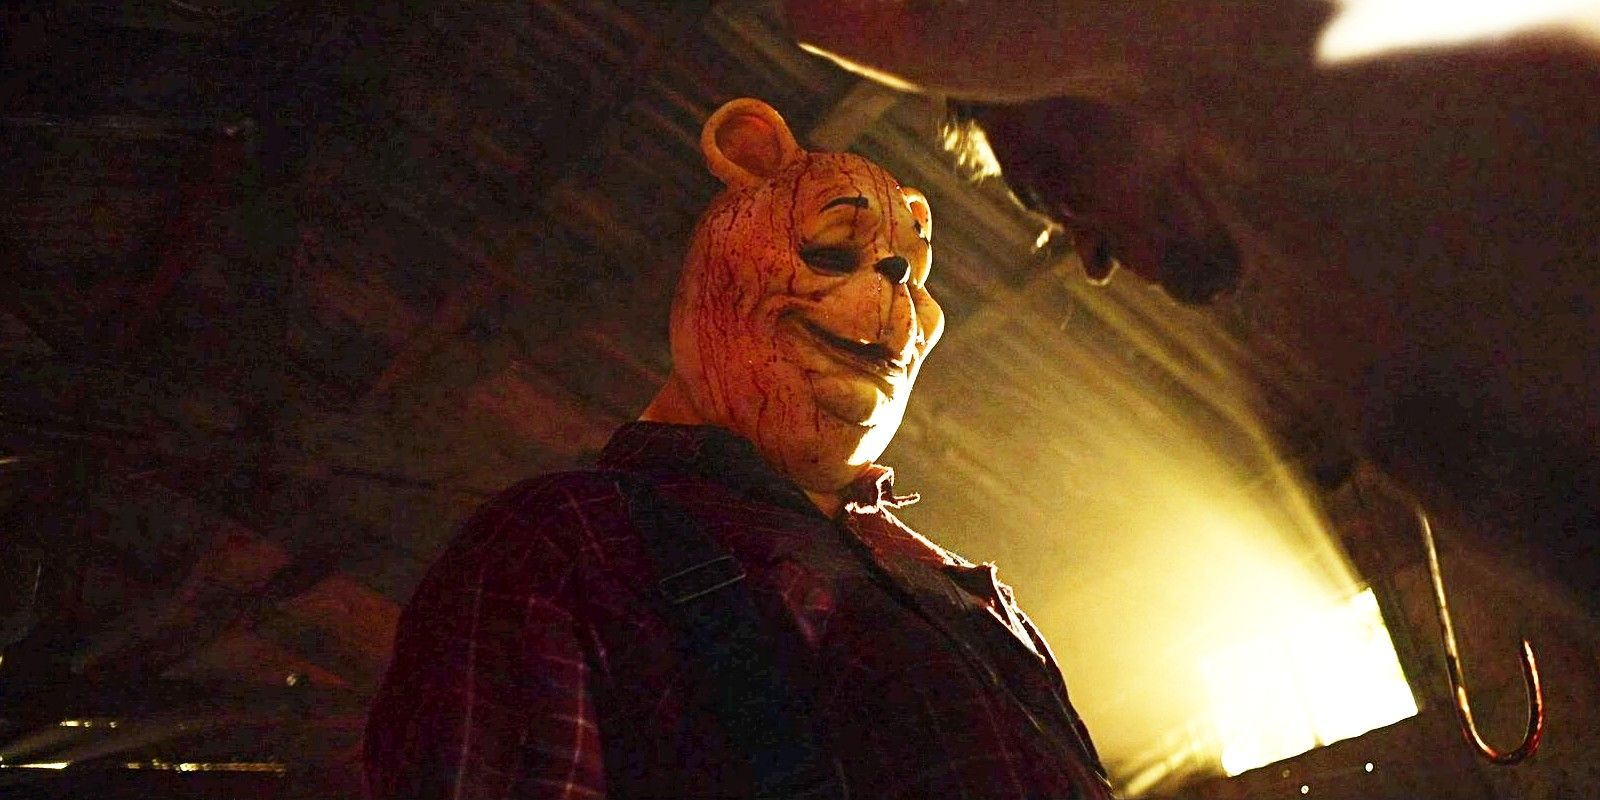 Winnie-The-Pooh: Blood & Honey 2 mejorará drásticamente el éxito viral original, promete el director de la película de terror